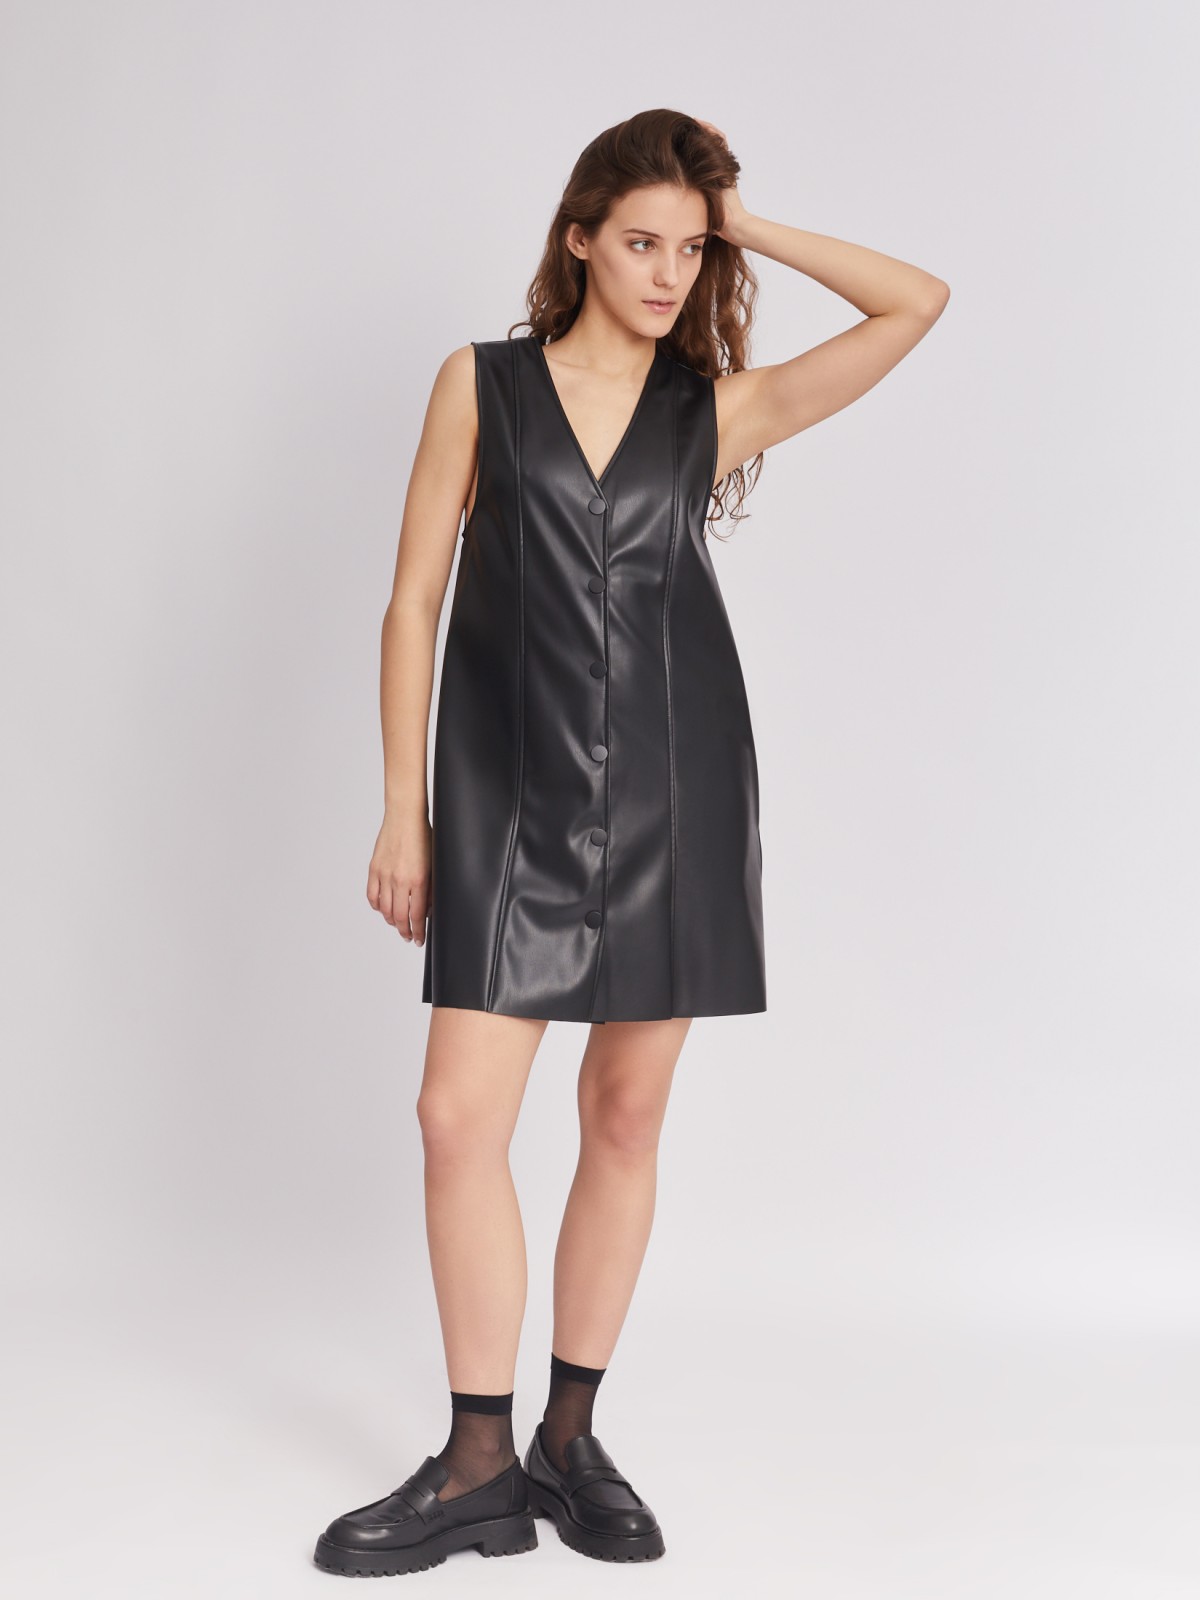 Платье-сарафан длины мини без рукавов из экокожи на кнопках zolla 223338259051, цвет черный, размер XS - фото 2